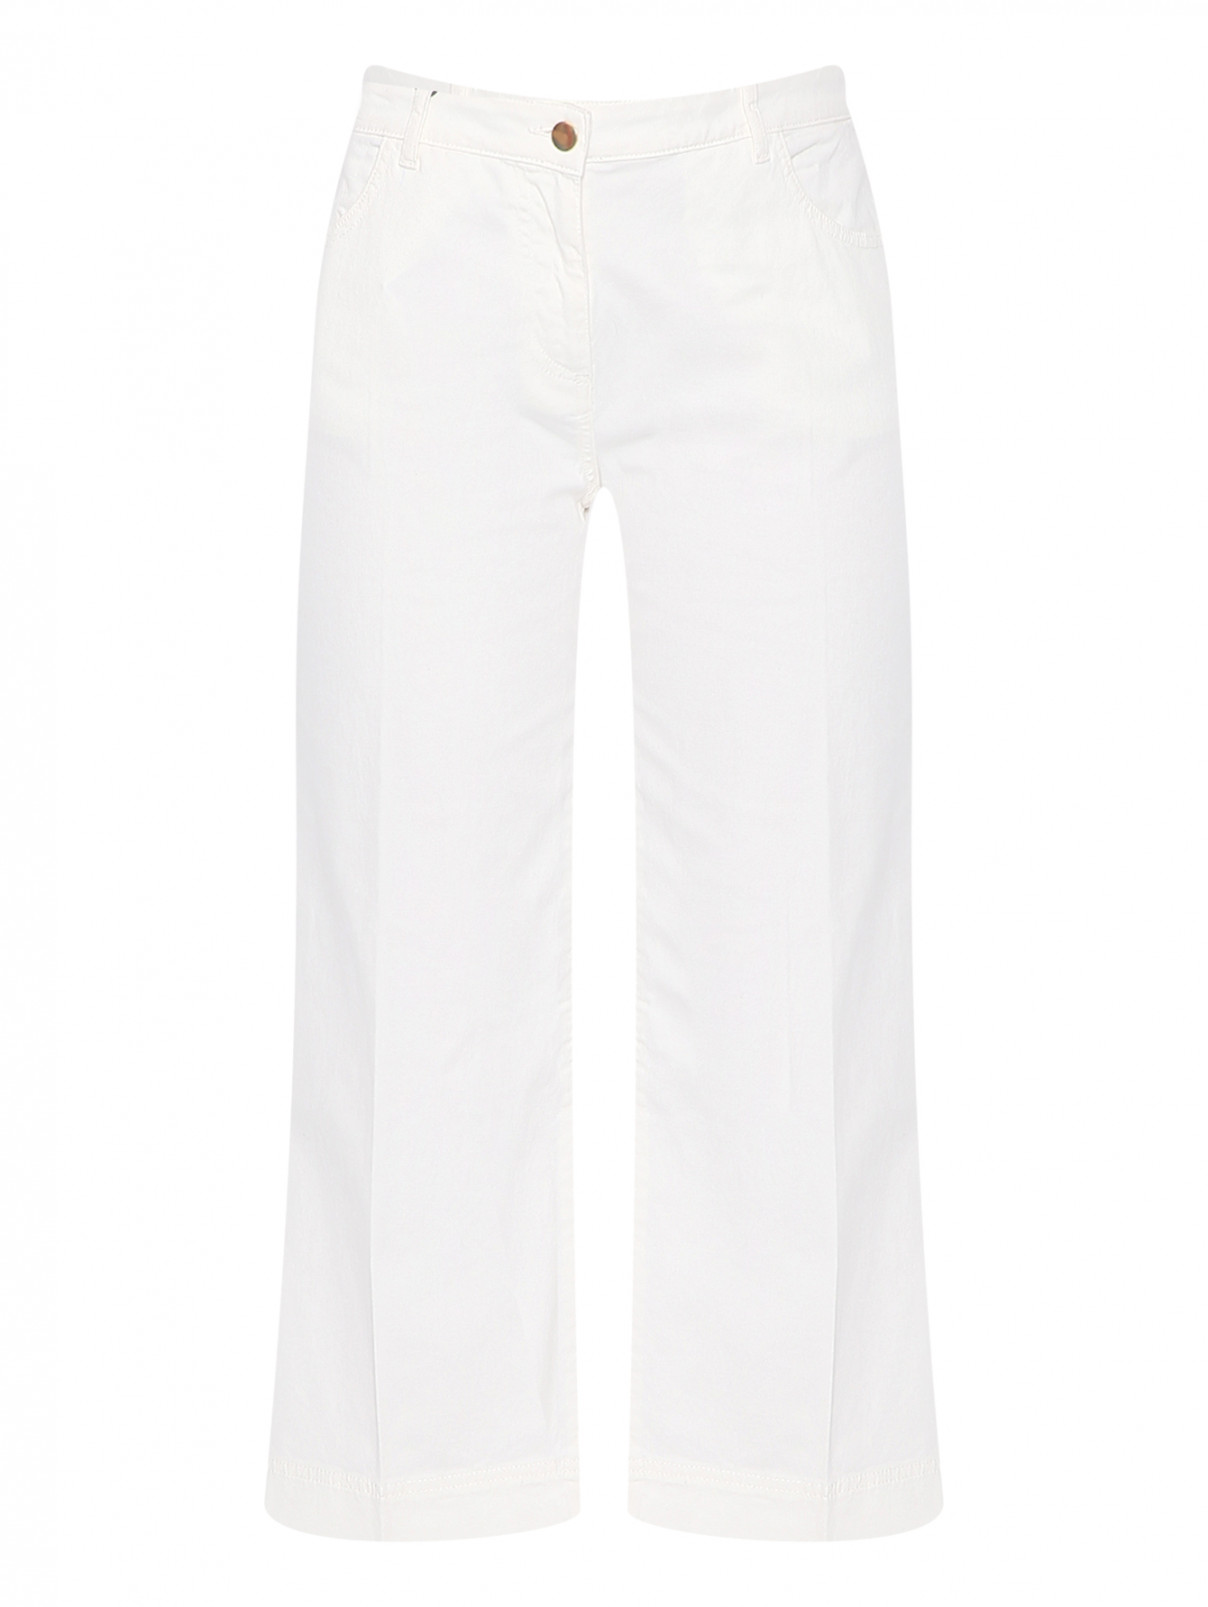 Укороченные брюки из хлопка Persona by Marina Rinaldi  –  Общий вид  – Цвет:  Белый